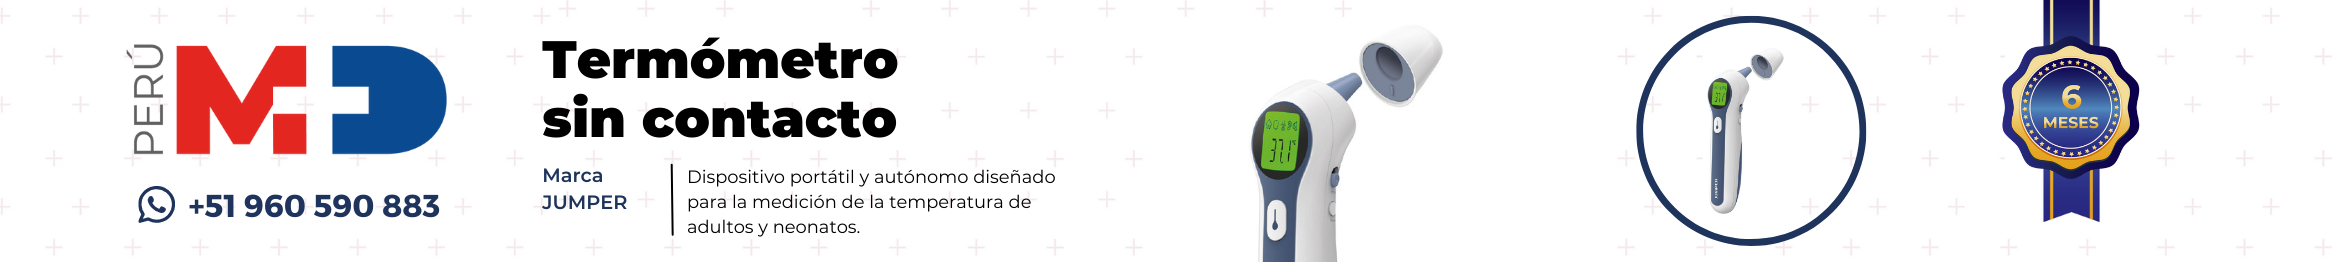 Conoce el termómetro JUMPER. Un dispositivo autónomo para la medición de la temperatura en bebés, niños, adultos y objetos.